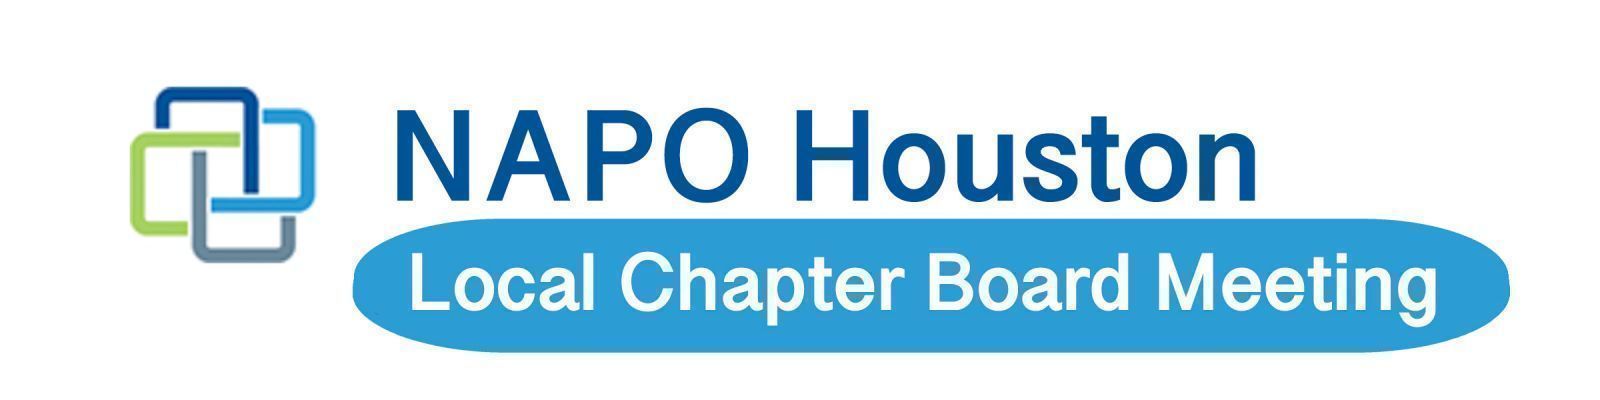 Board Meeting | NAPO Houston